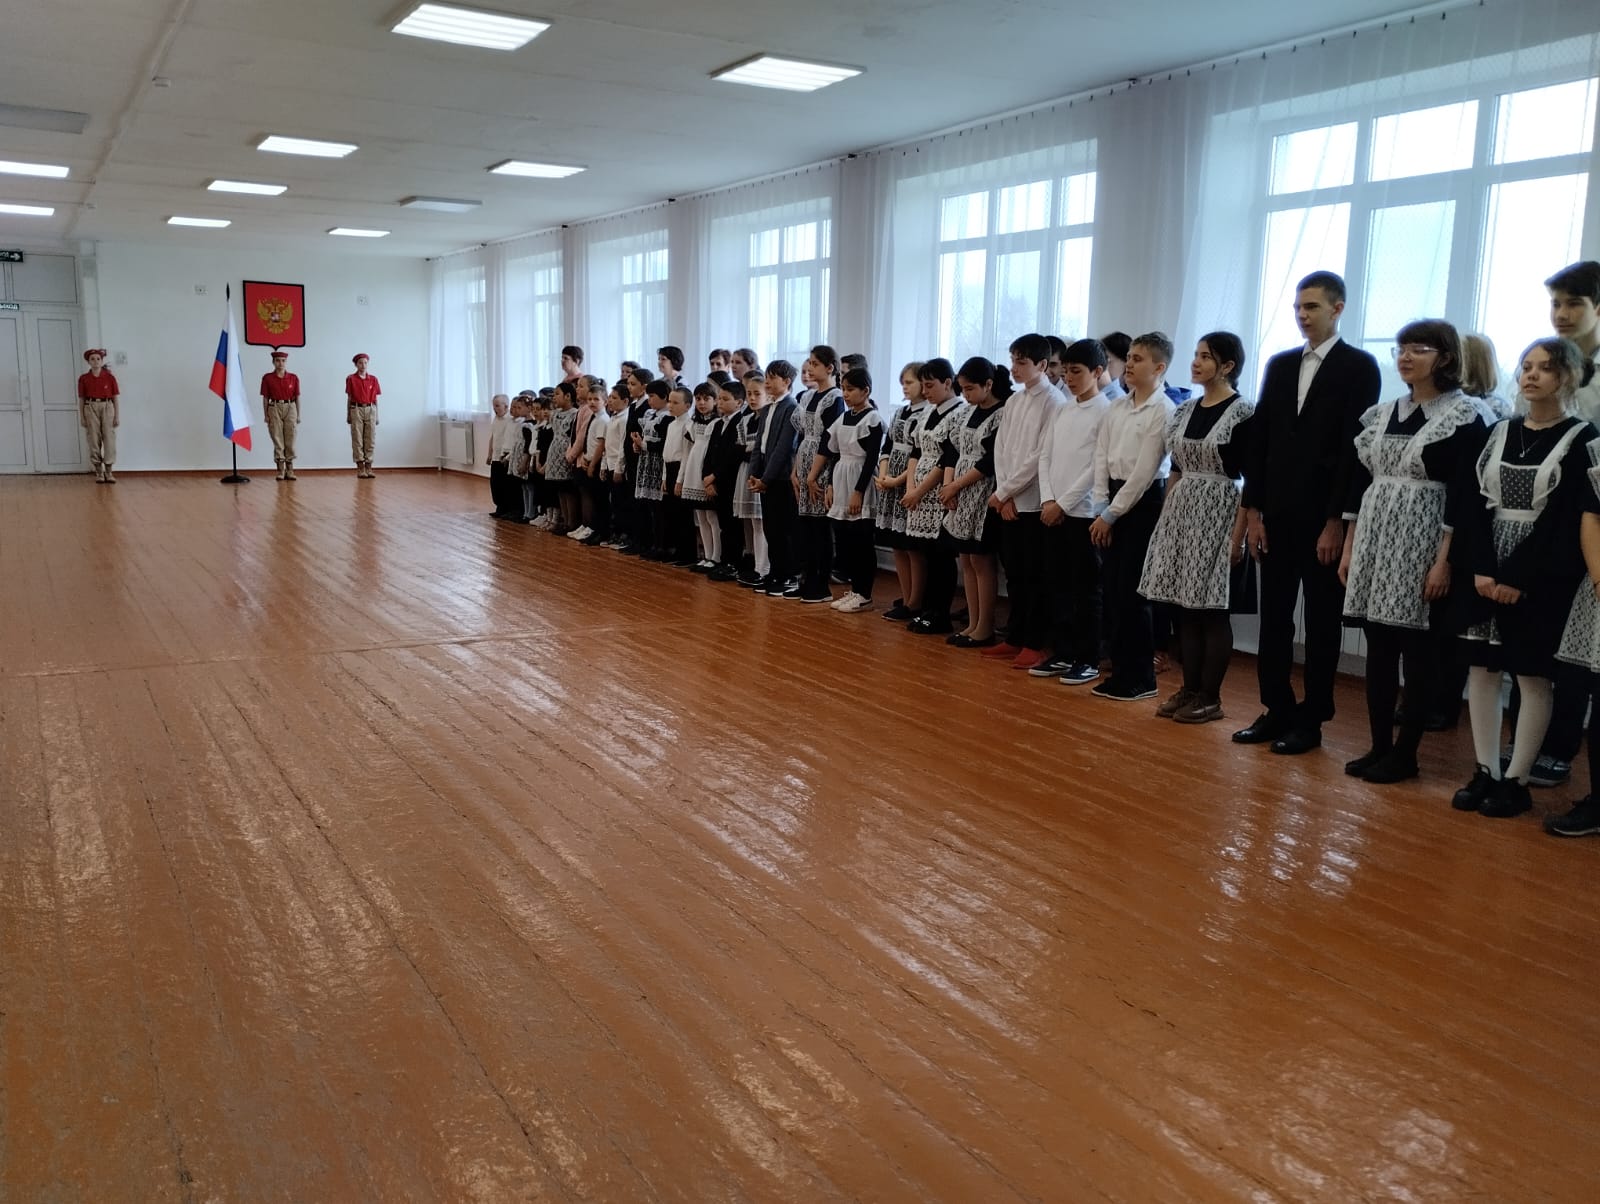 Церемония внесения Государственного флага Российской Федерации, Разговор о важном.